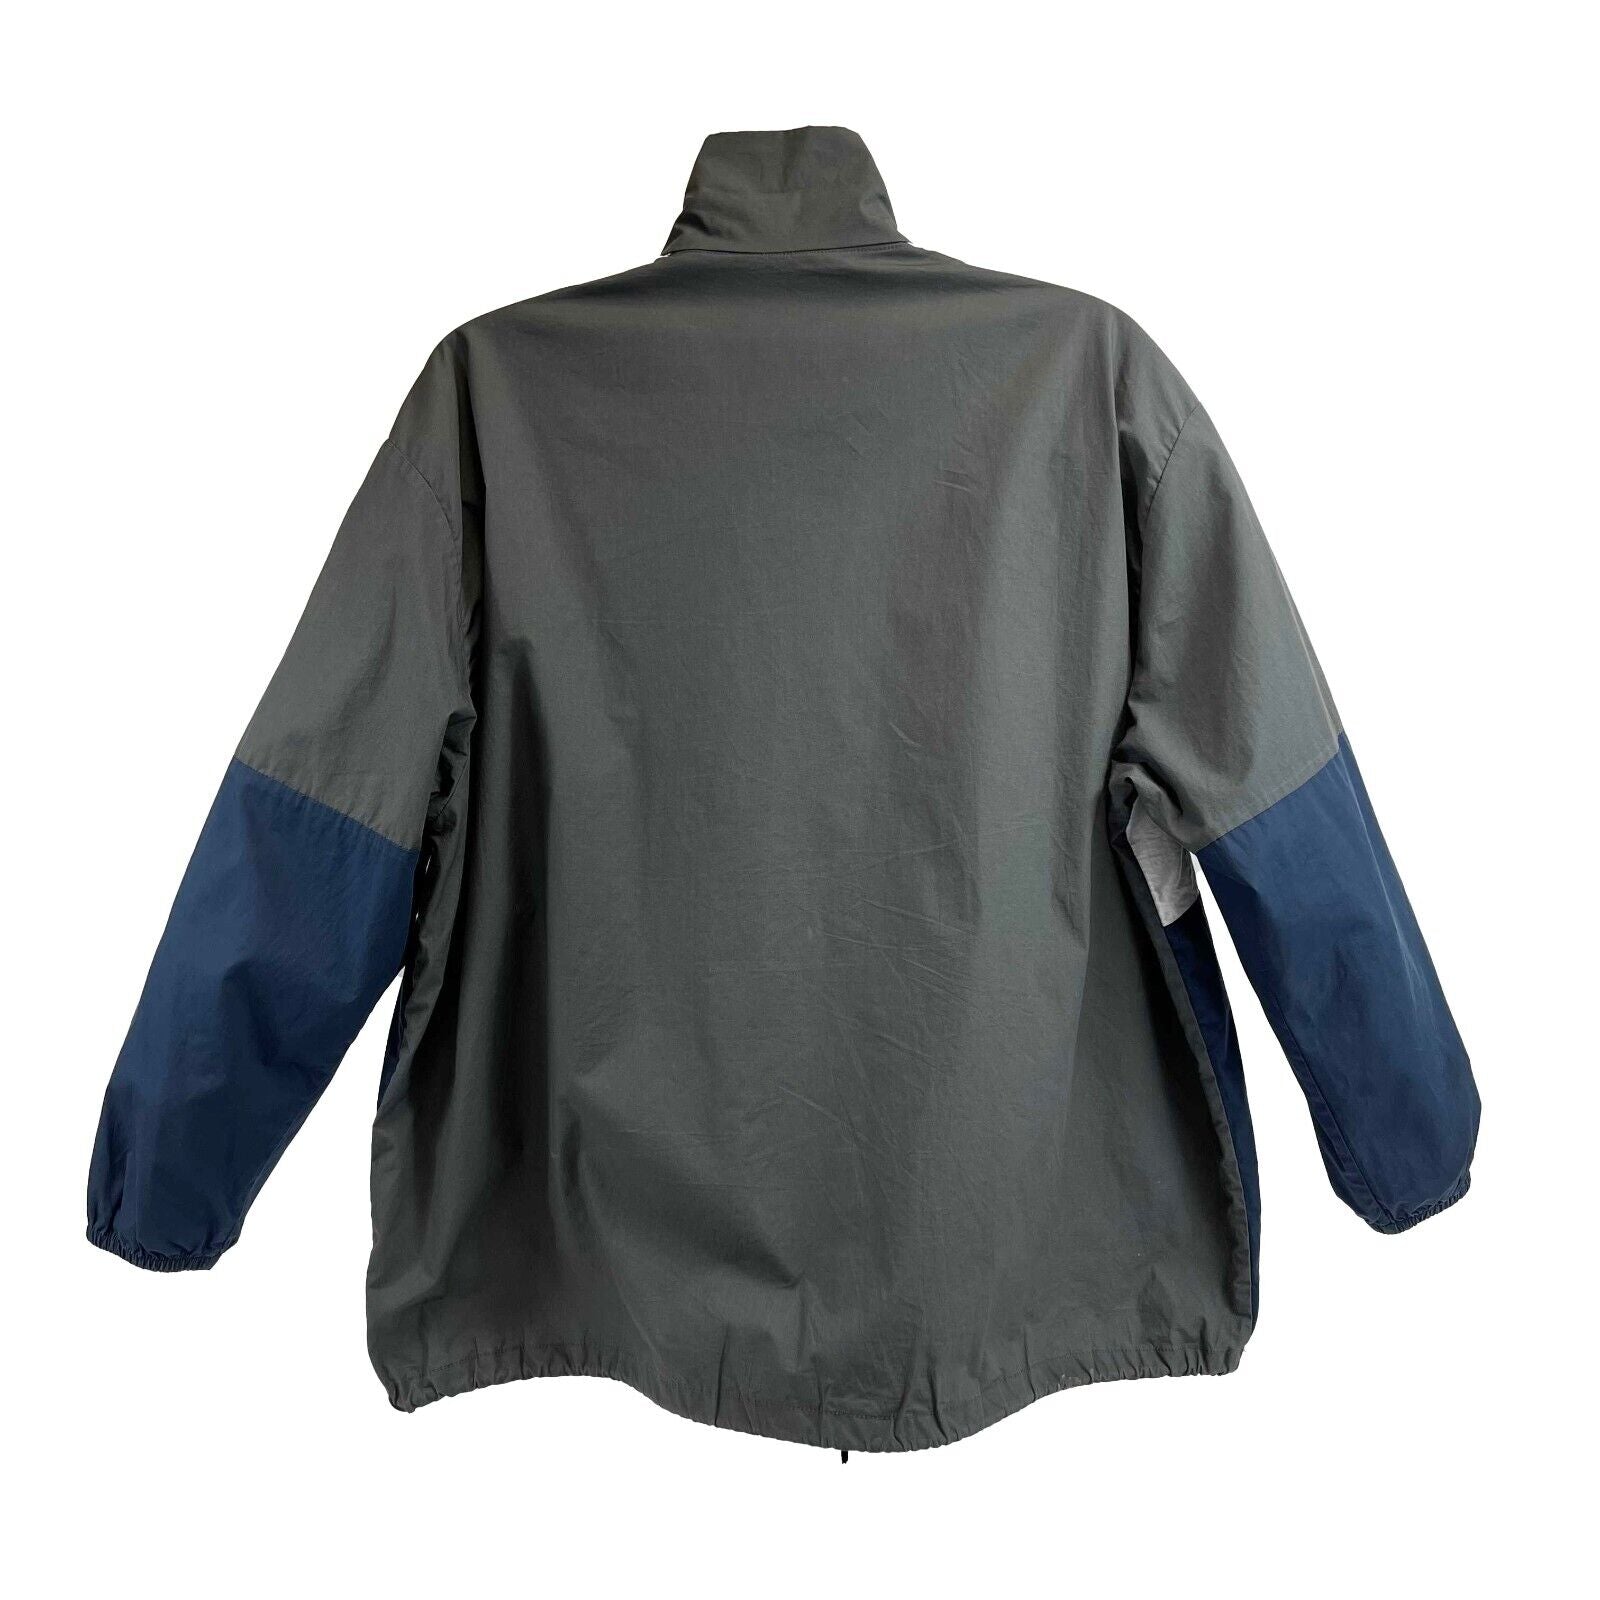 Balenciaga - Oversized Logo Track Jacket - Grey and Blue - 38 US 8 